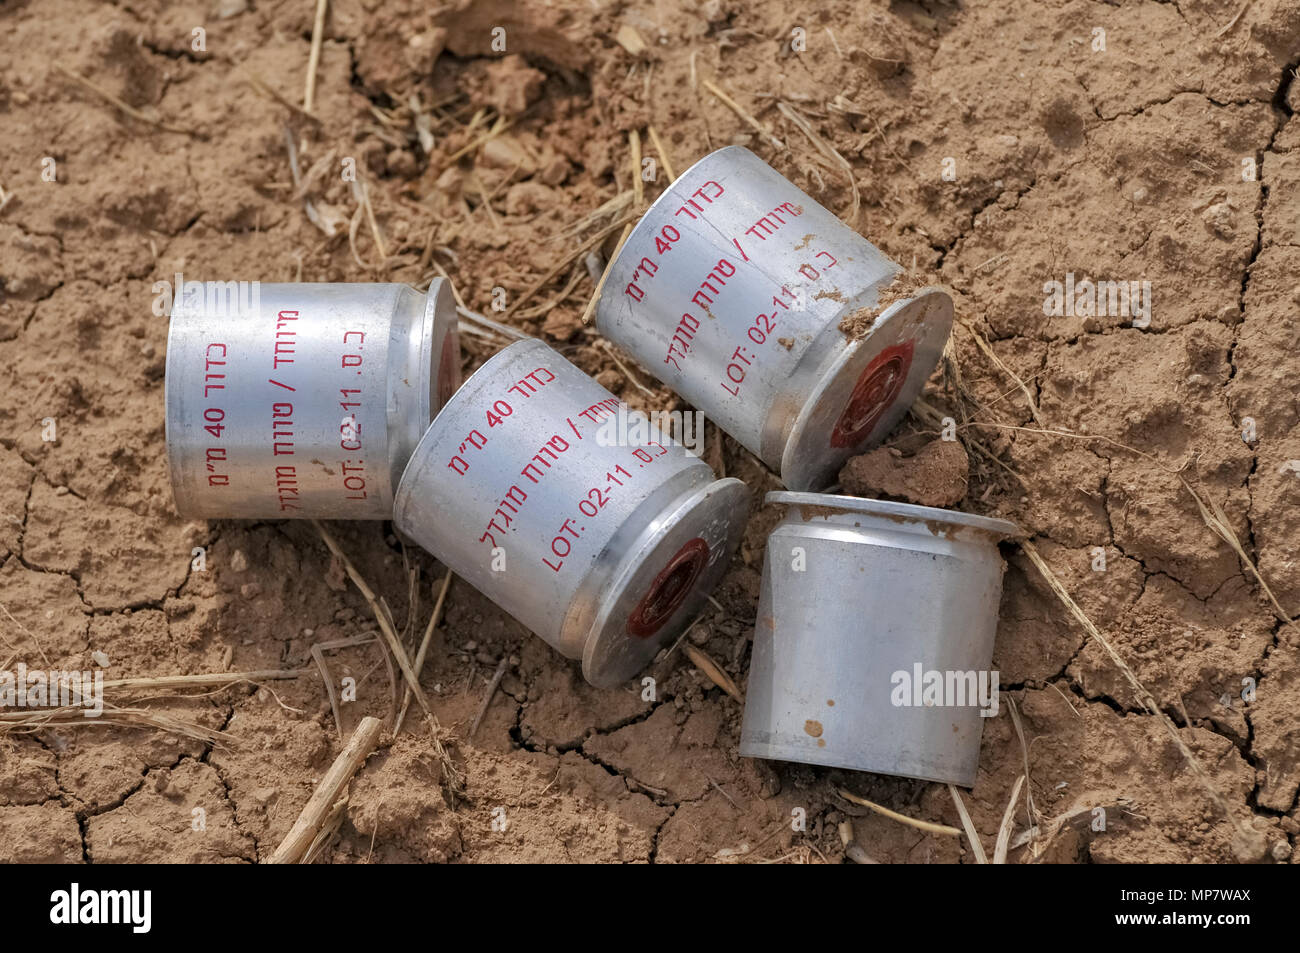 Le scatole metalliche del gas lacrimogeno utilizzato dai militari israeliani (IDF). Fotografato agli israeliani frontiera Gaza Foto Stock